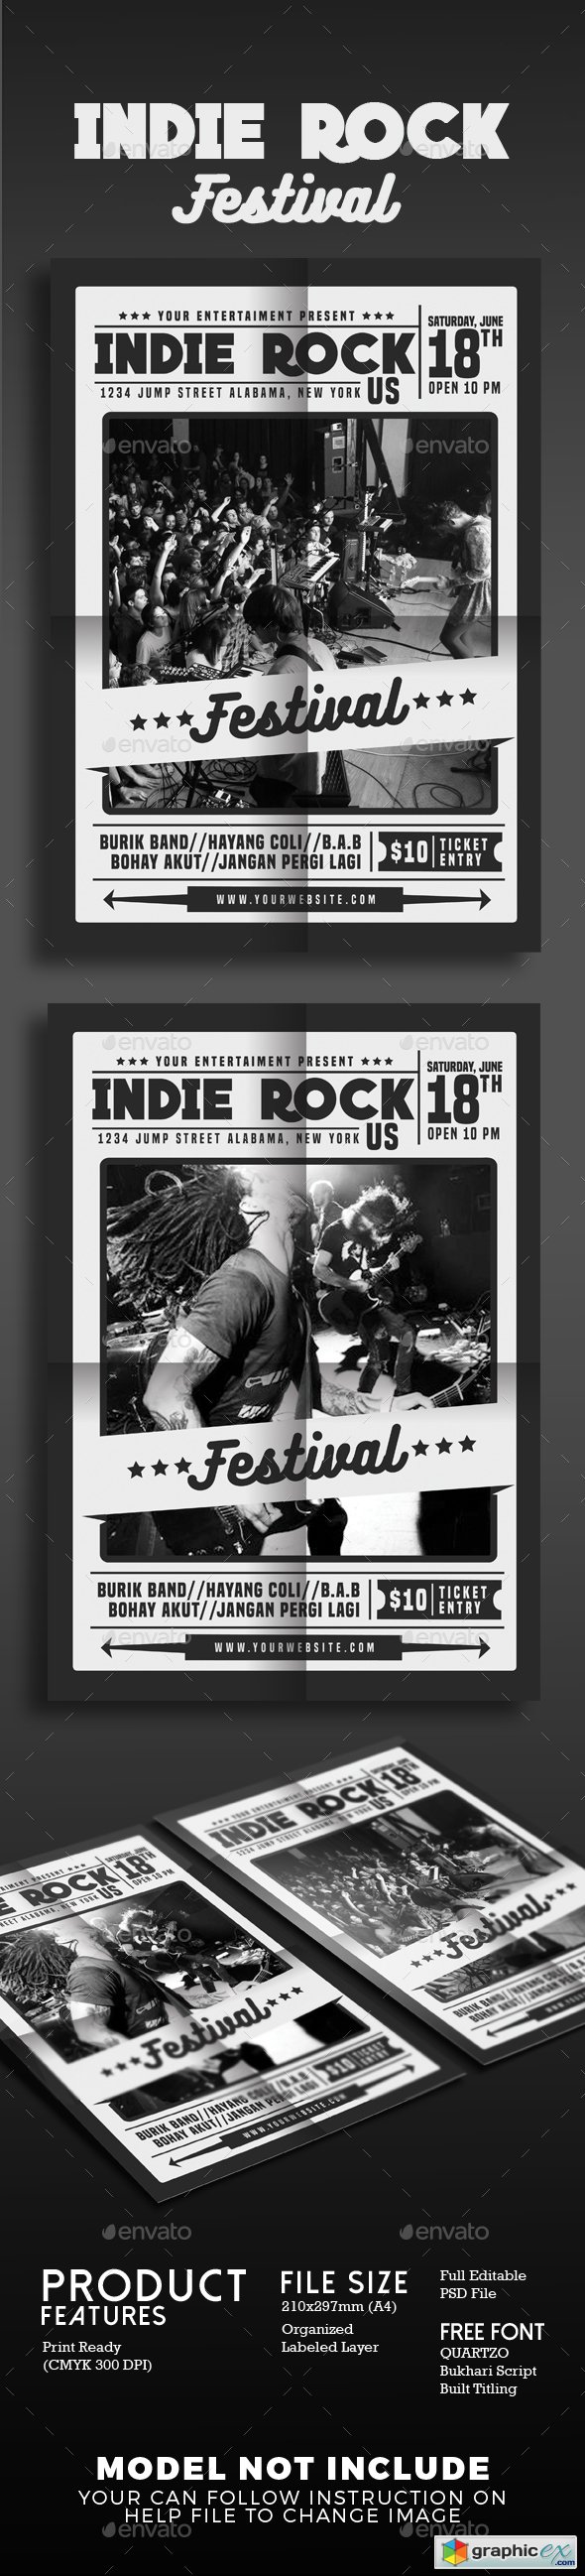 Indie Rock Festival